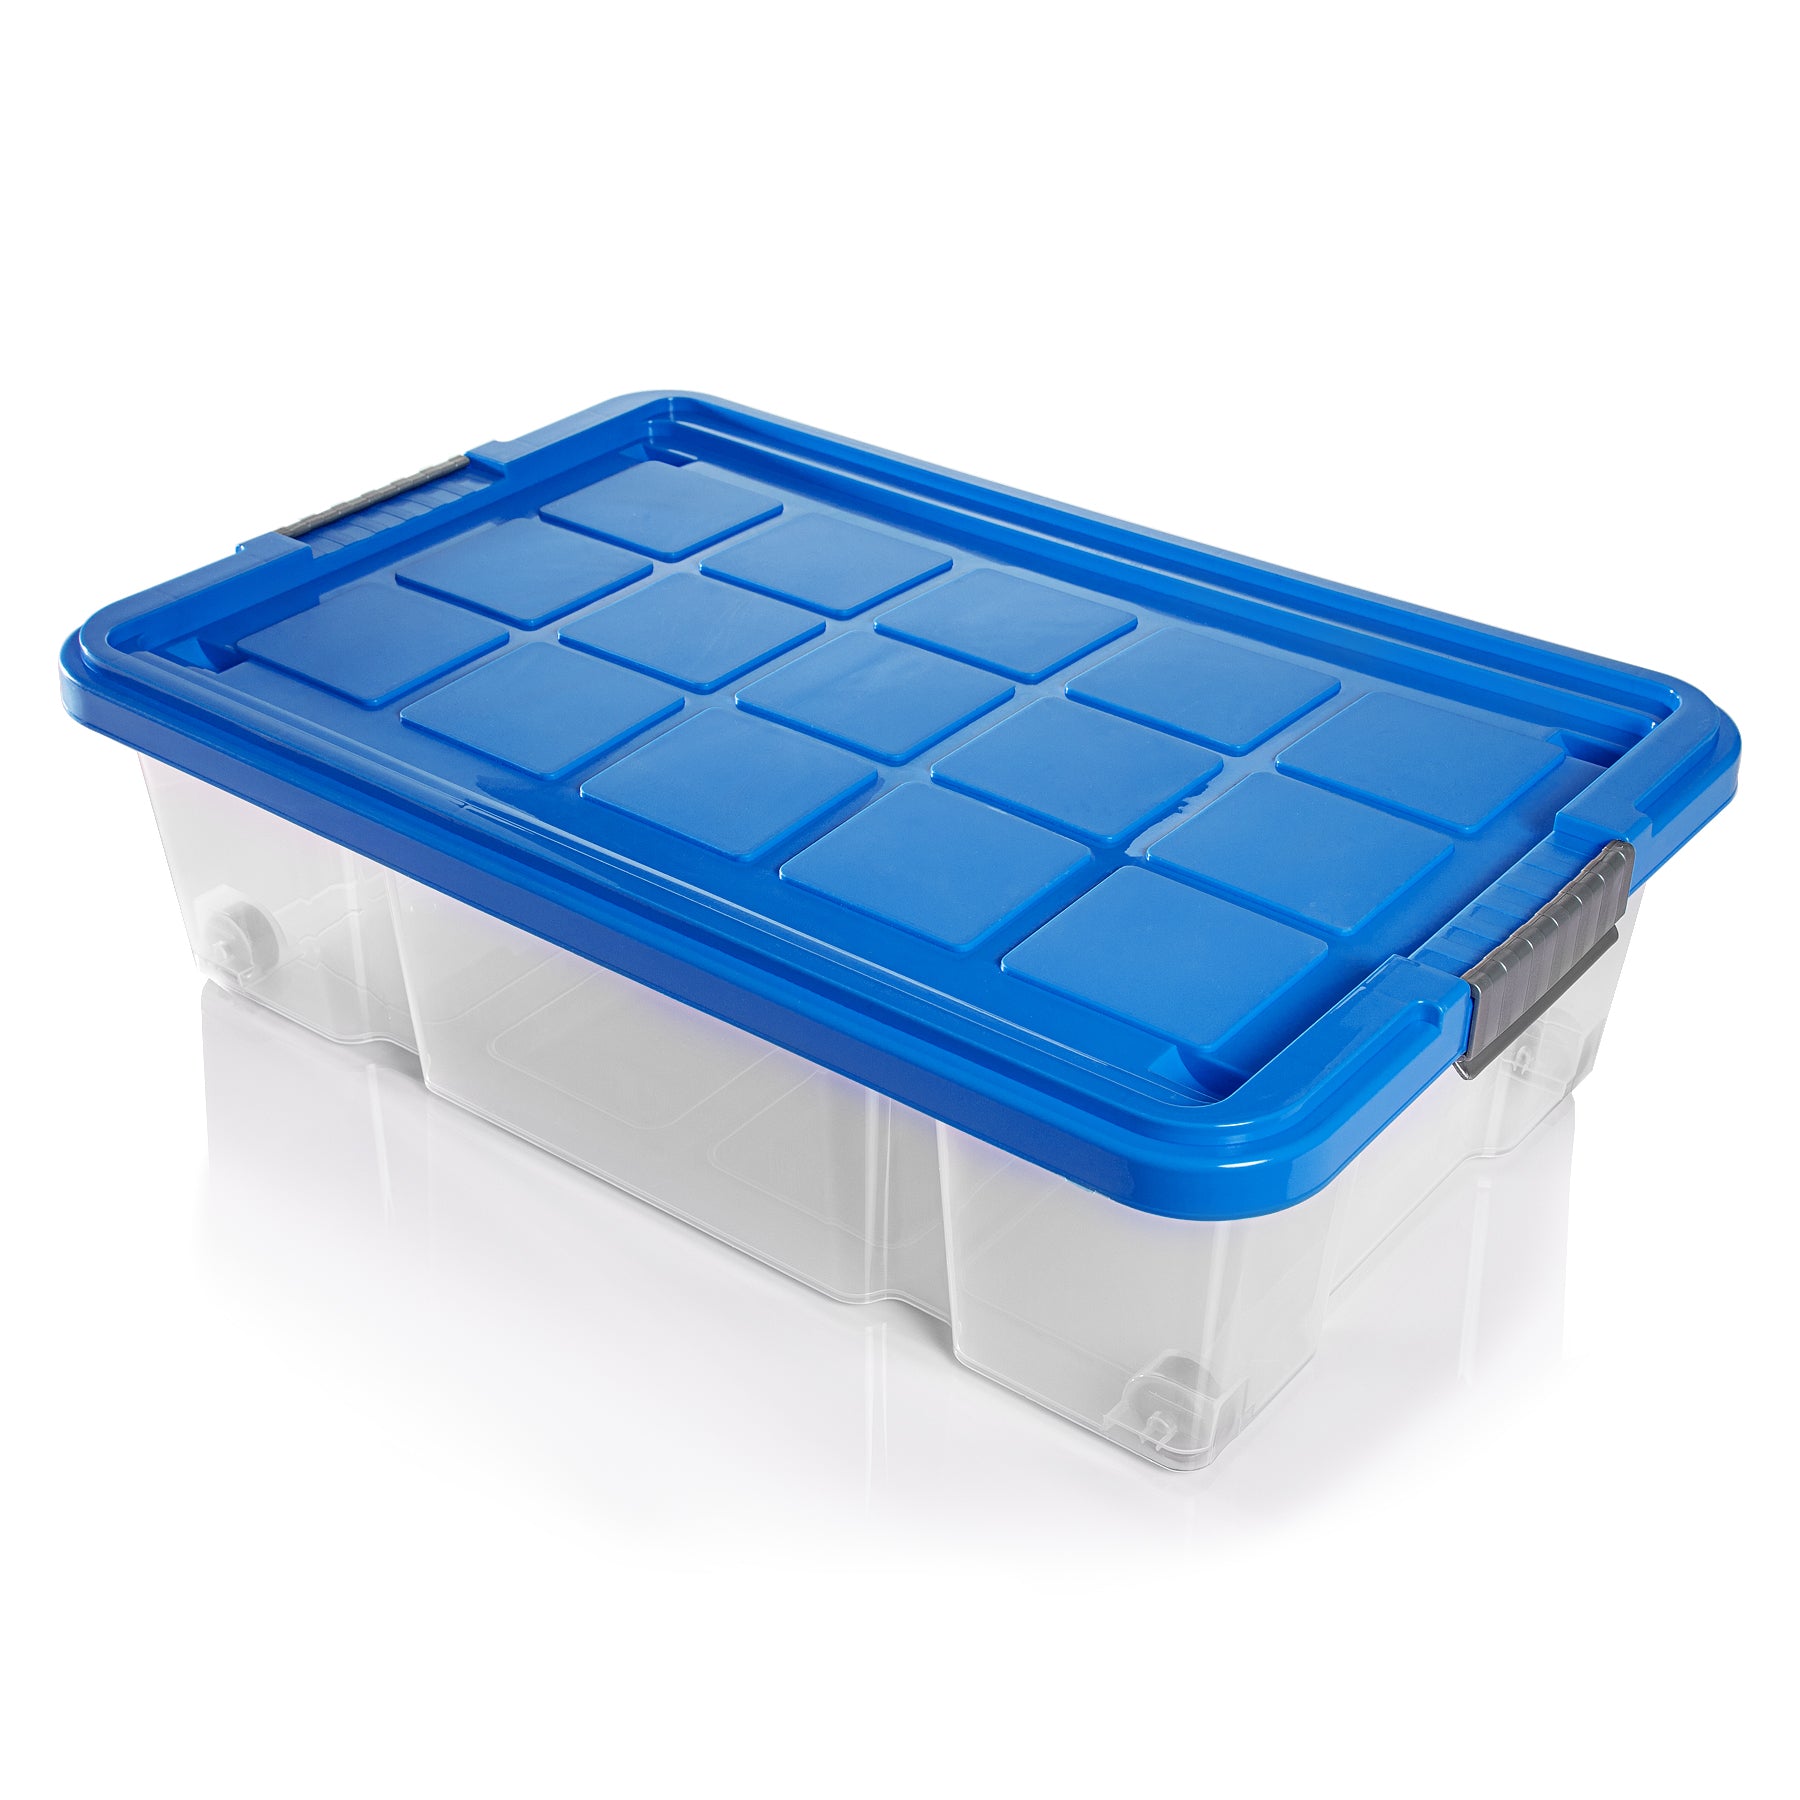 BigDean 2x Unterbettkommode Aufbewahrungsbox mit Deckel 25L azurblau 60x40x17,5cm - mit Rollen + Clipverschluss nestbar - Eurobox Aufbewahrungsbox Storage Box Bettkasten - Made in Germany 1